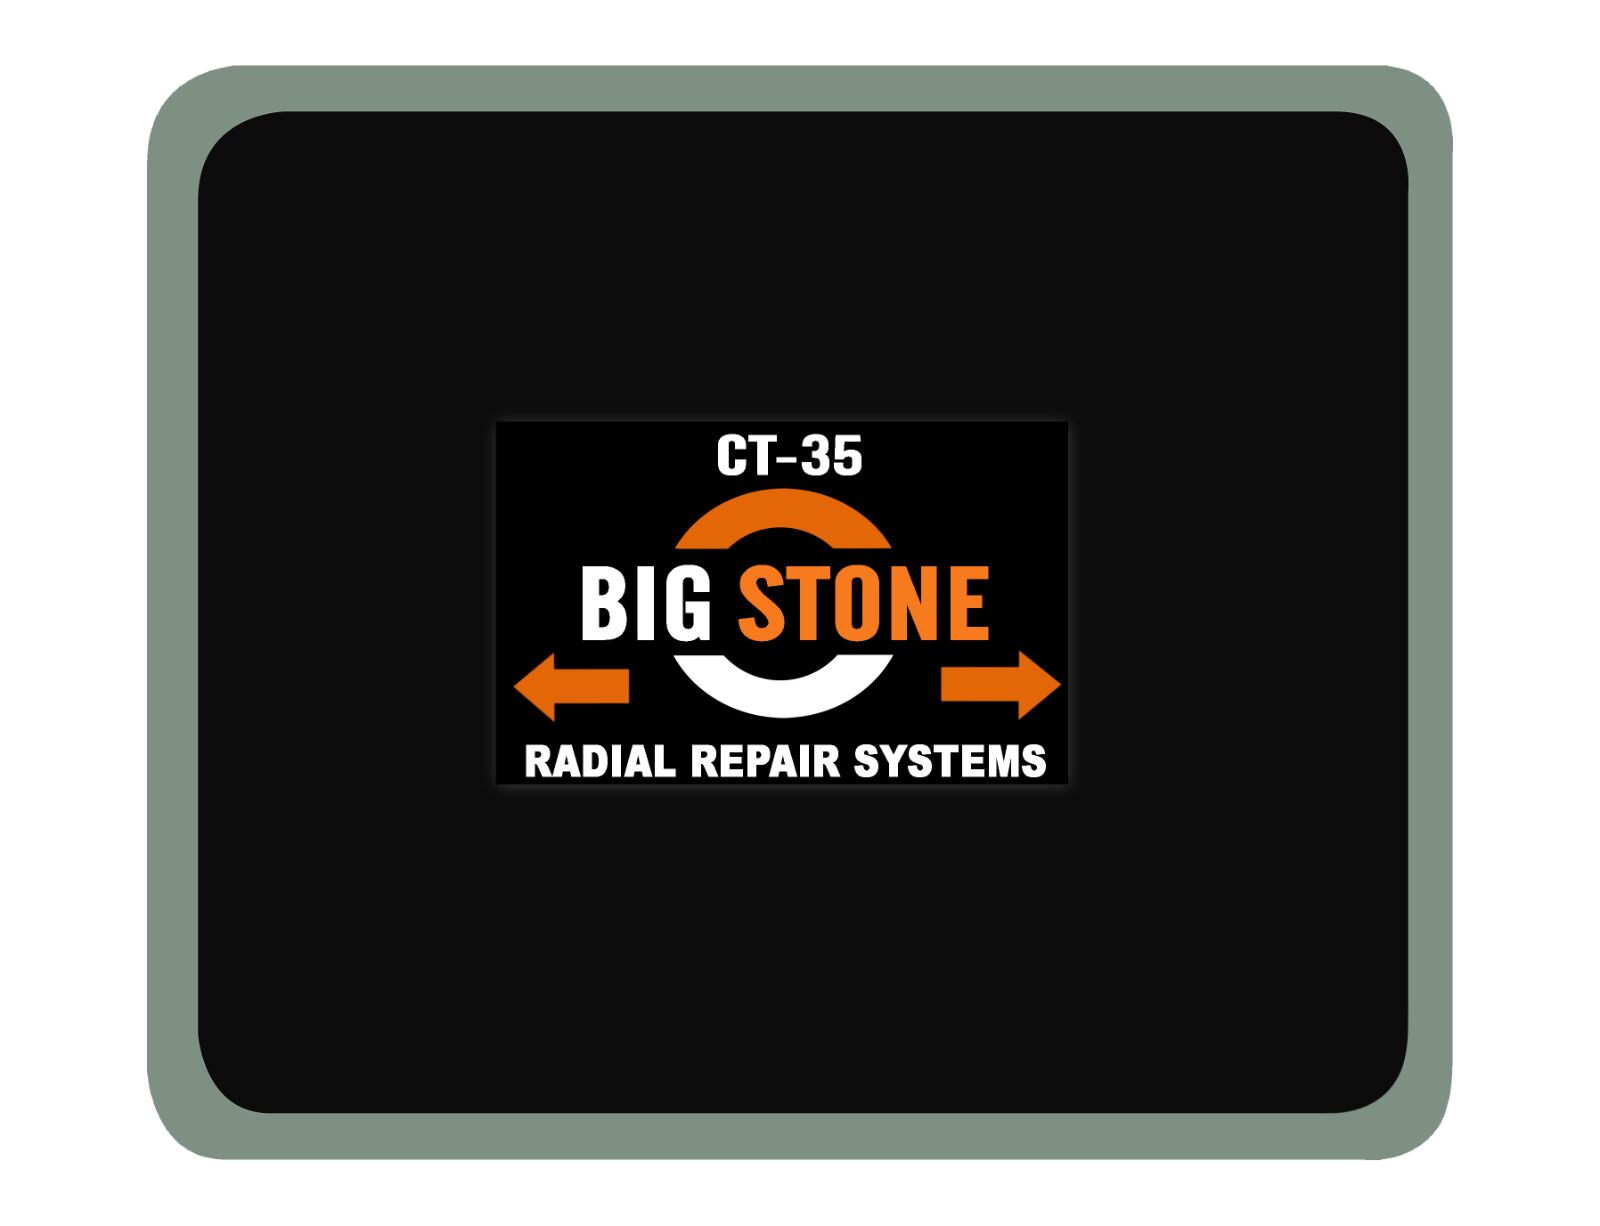 Radial repairs system ct-35